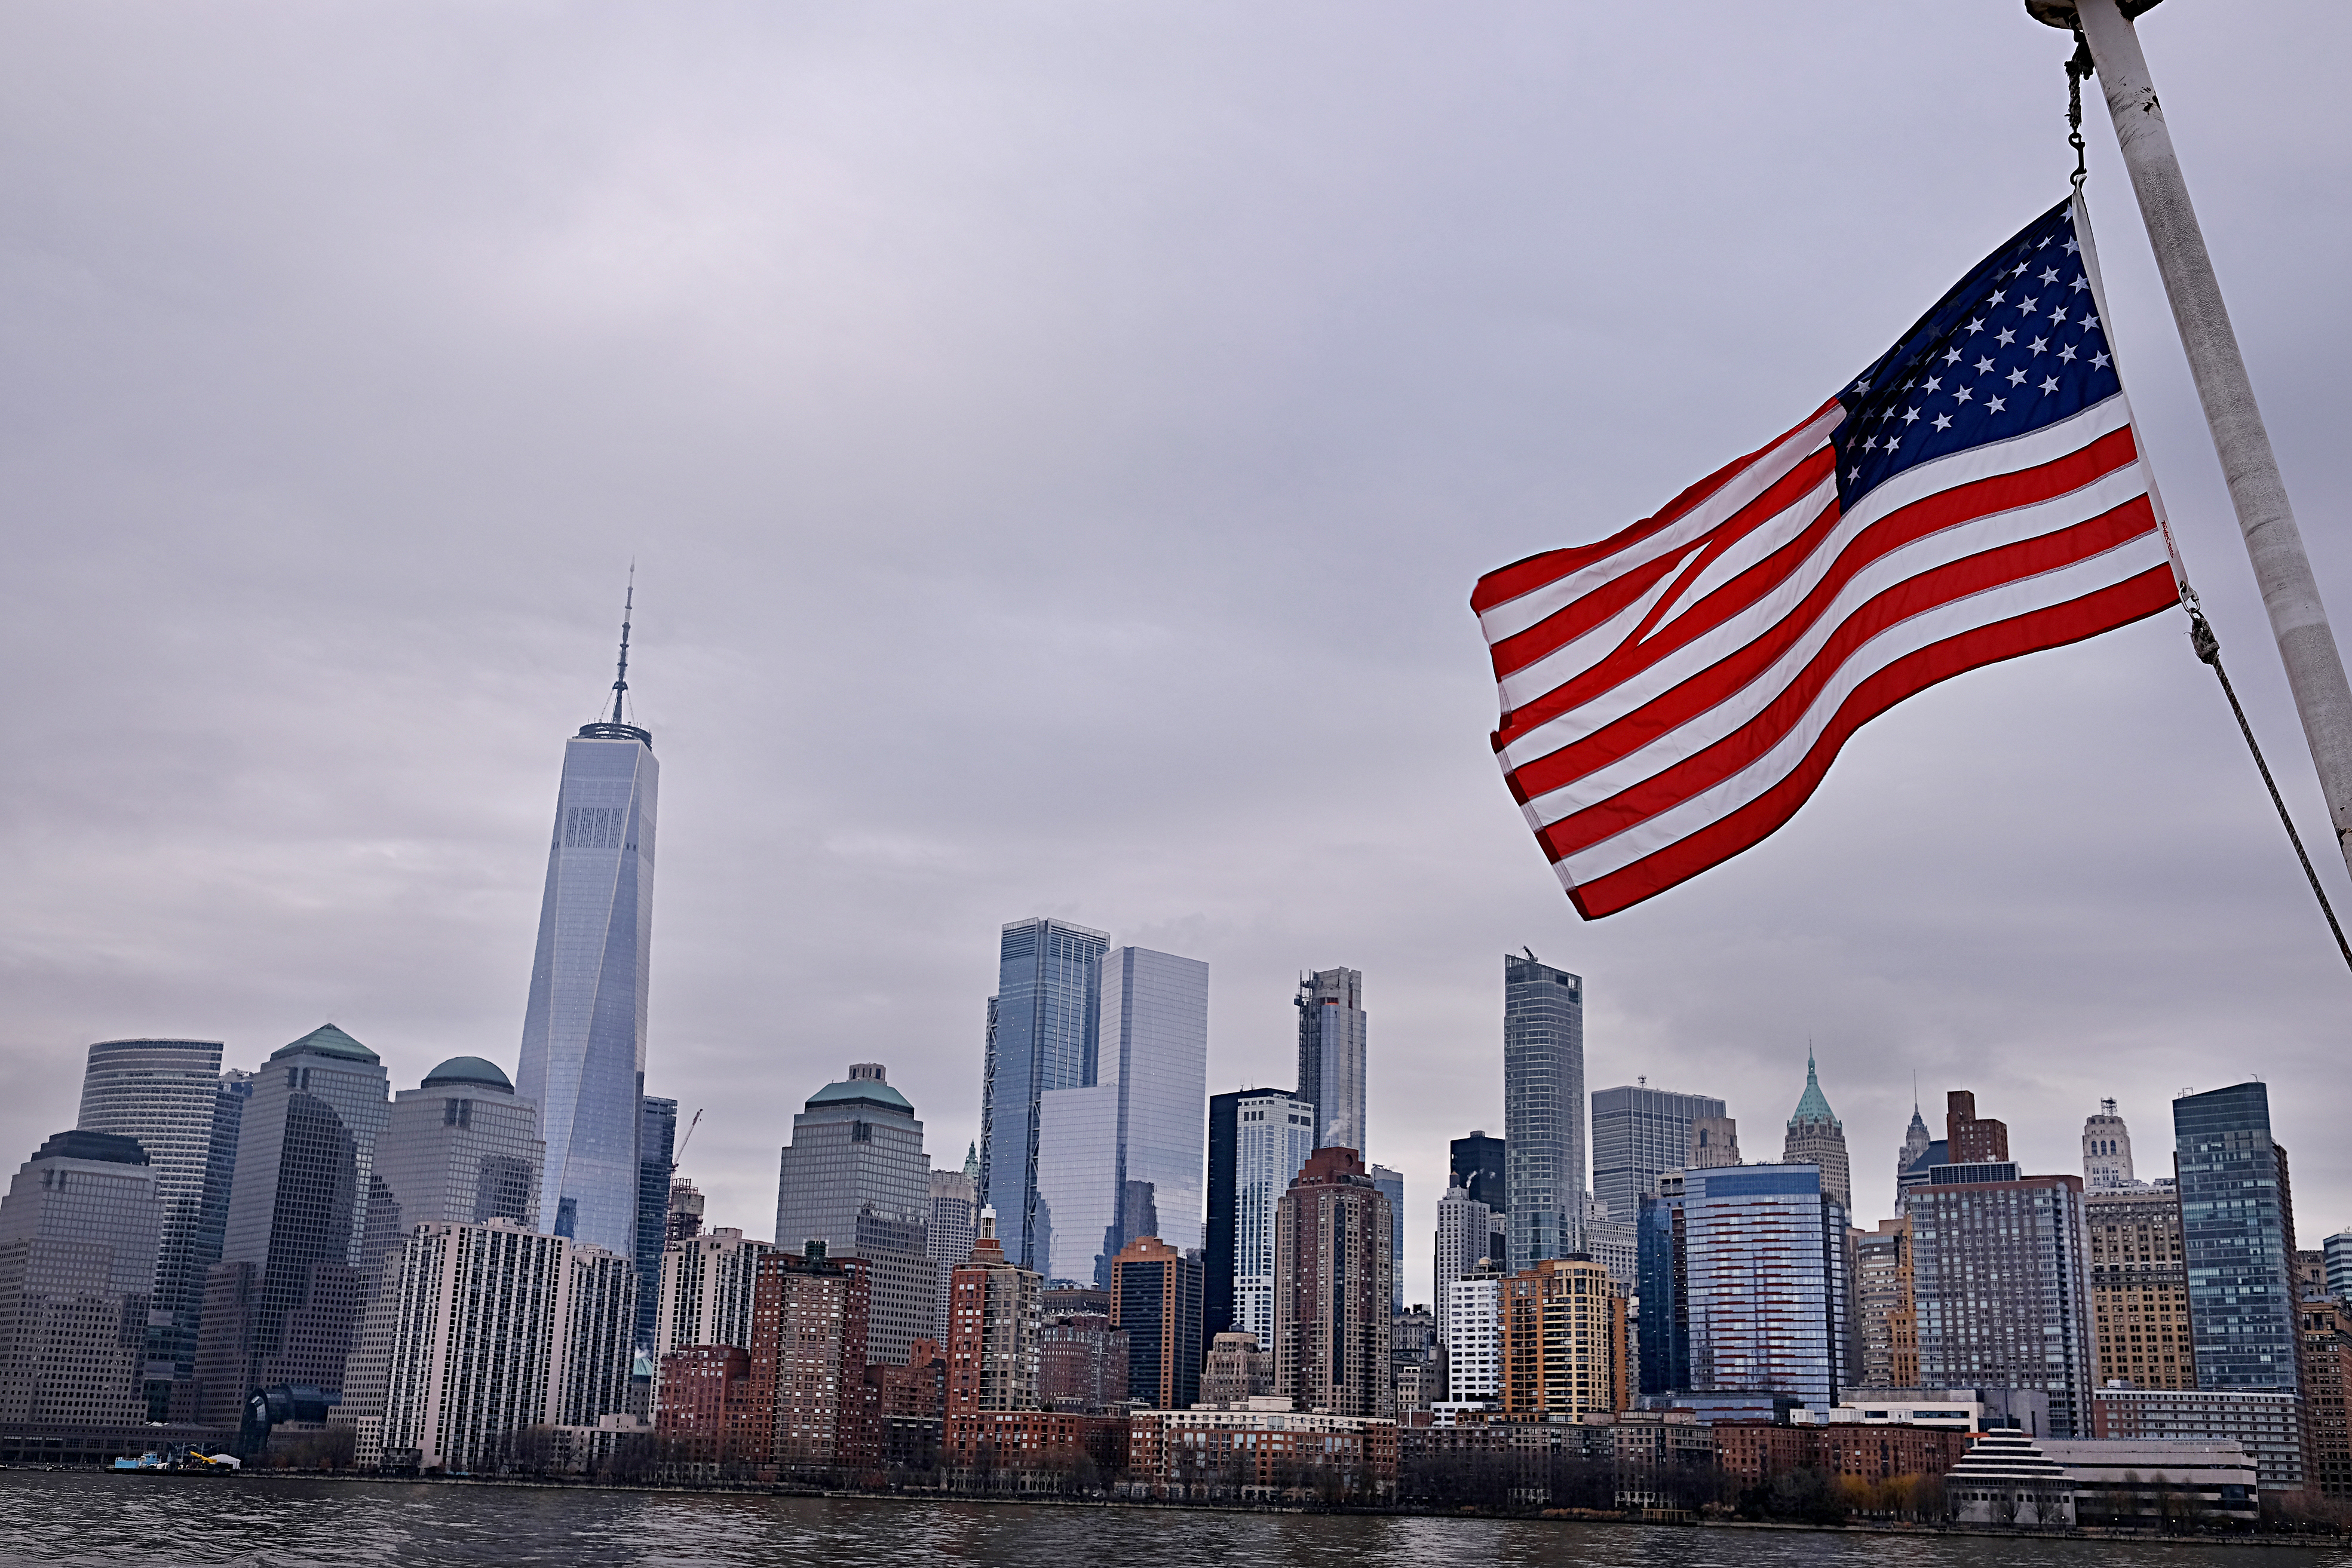 Вид на Манхэттен и флаг США, ВНЖ которых могут получить россияне